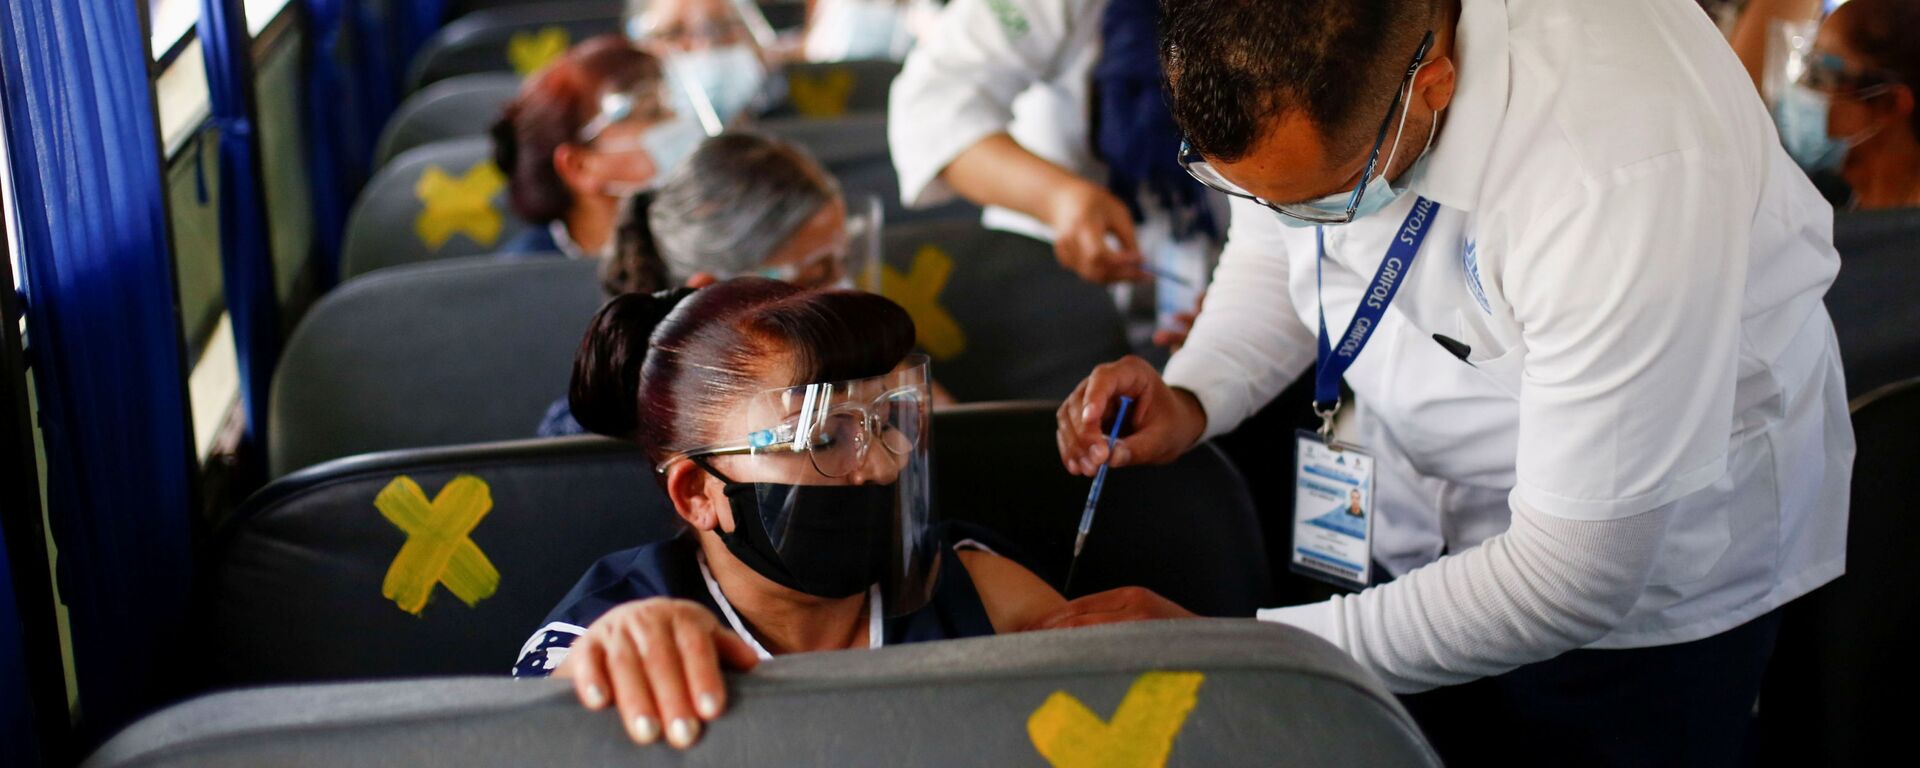 Сотрудники получают дозу вакцины от коронавируса Pfizer-BioNTech (COVID-19) в автобусе в Сьюдад-Хуарес, Мексика - Sputnik Latvija, 1920, 12.06.2021